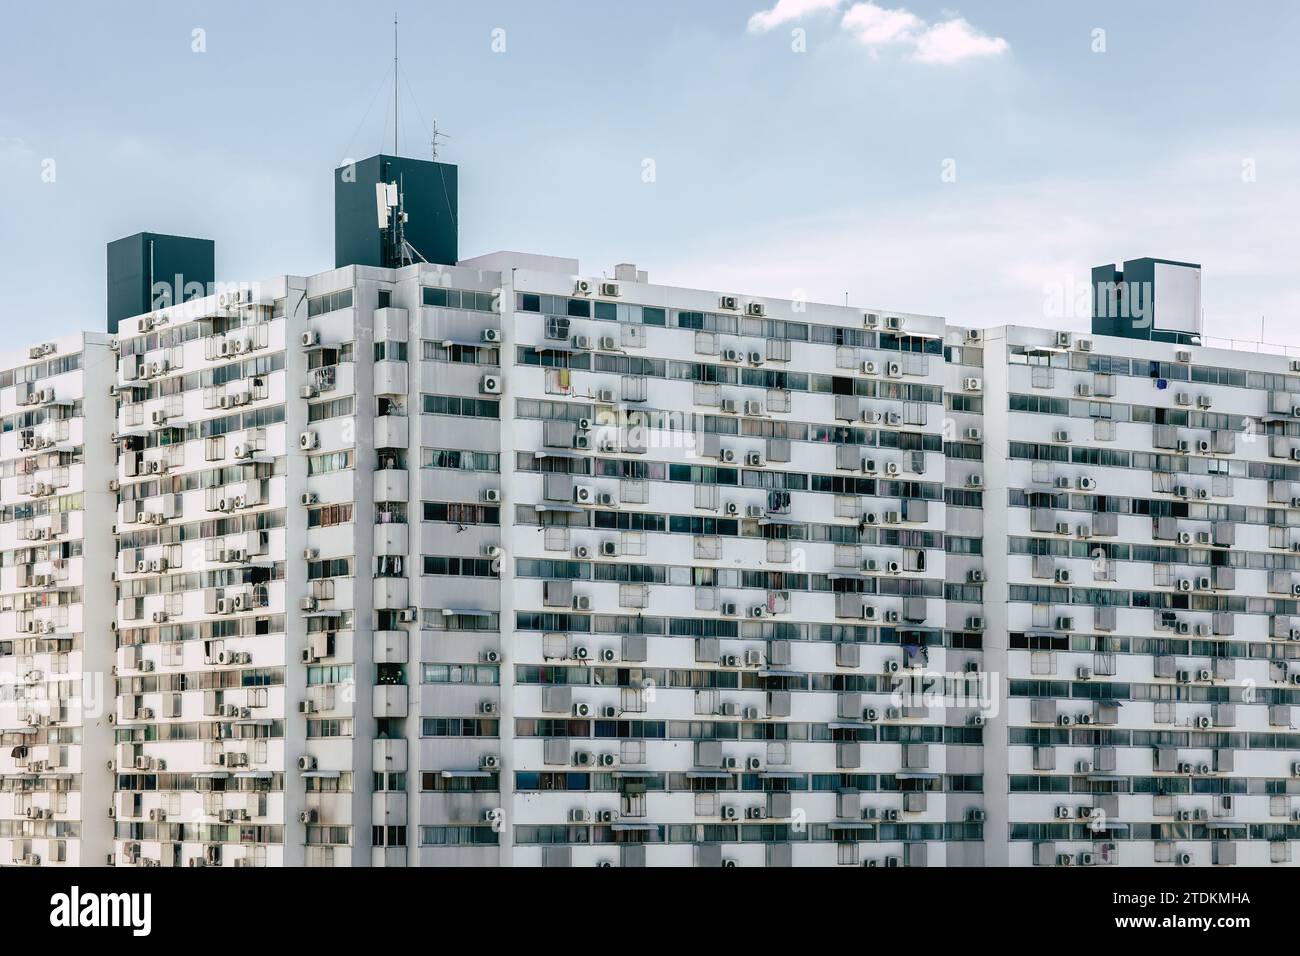 Affollata torre di appartamenti nella moderna metropolitana del centro città, la folla povera di persone che vivono in uno stile di vita ad alta densità. Foto Stock